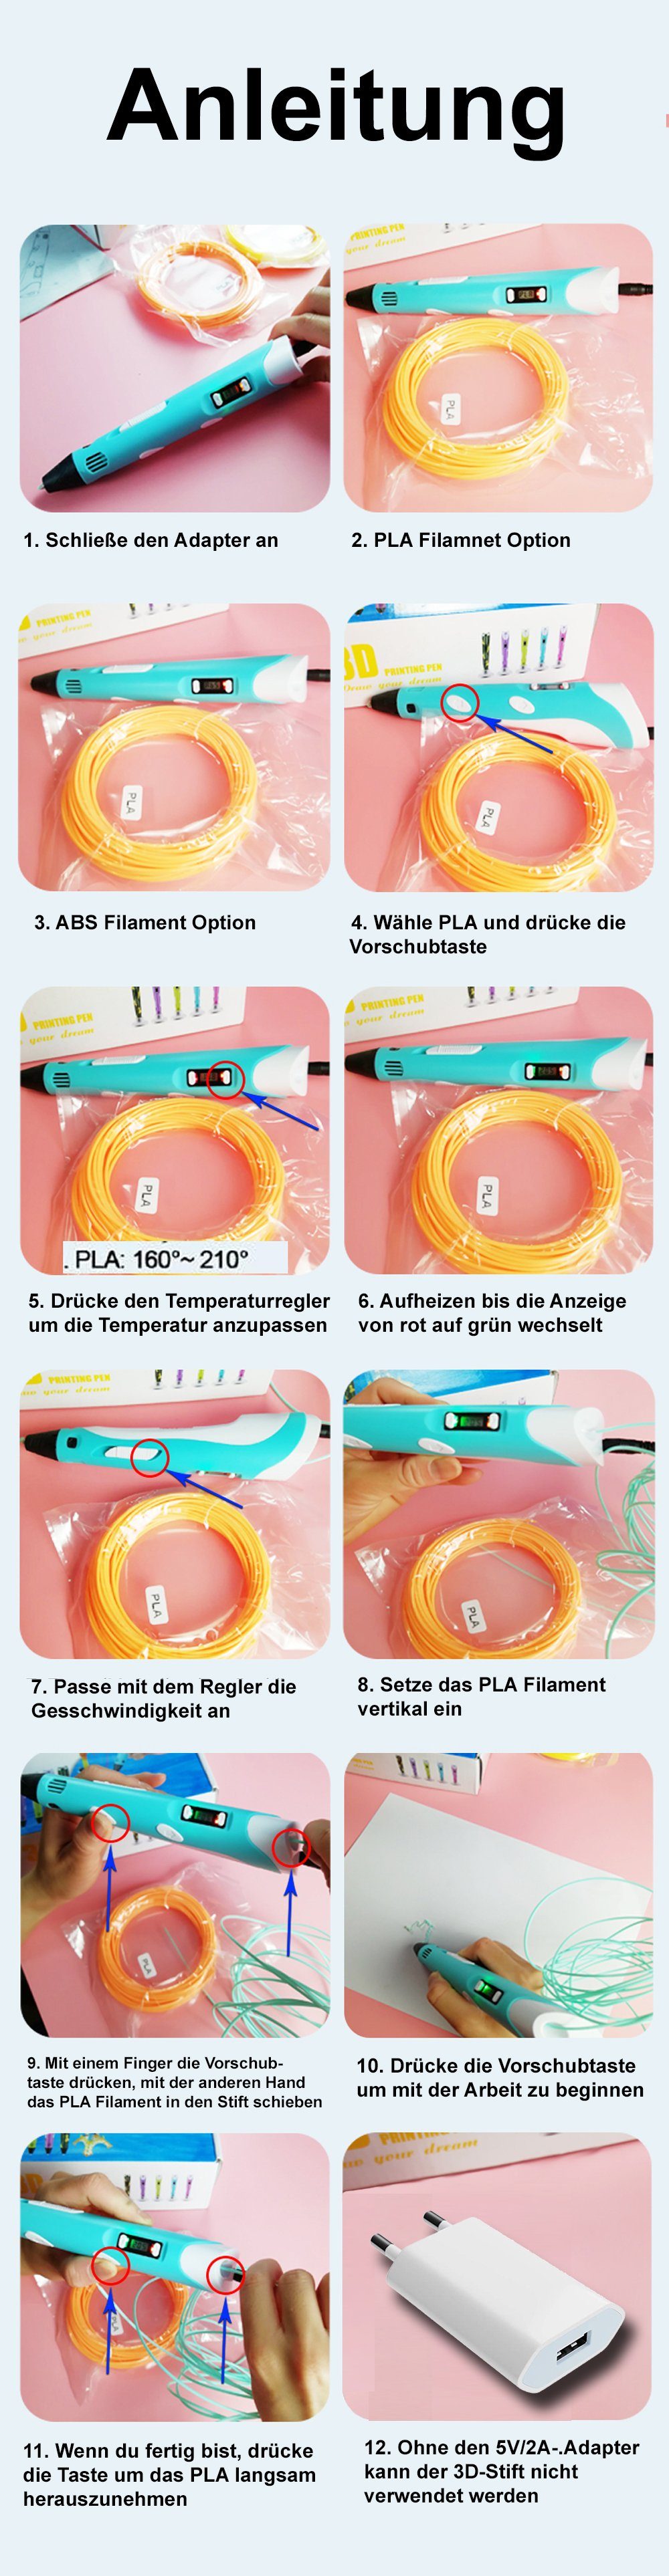 TPFNet DIY-Geschenk 3D Blau Kinder - Stift 3D-Drucker-Stift Farbe: für & für USB Erwachsene PLA Stift 3D LCD-Bildschirm mit Blau Filamentstift Drucker Kabel, Stift mit Kinder